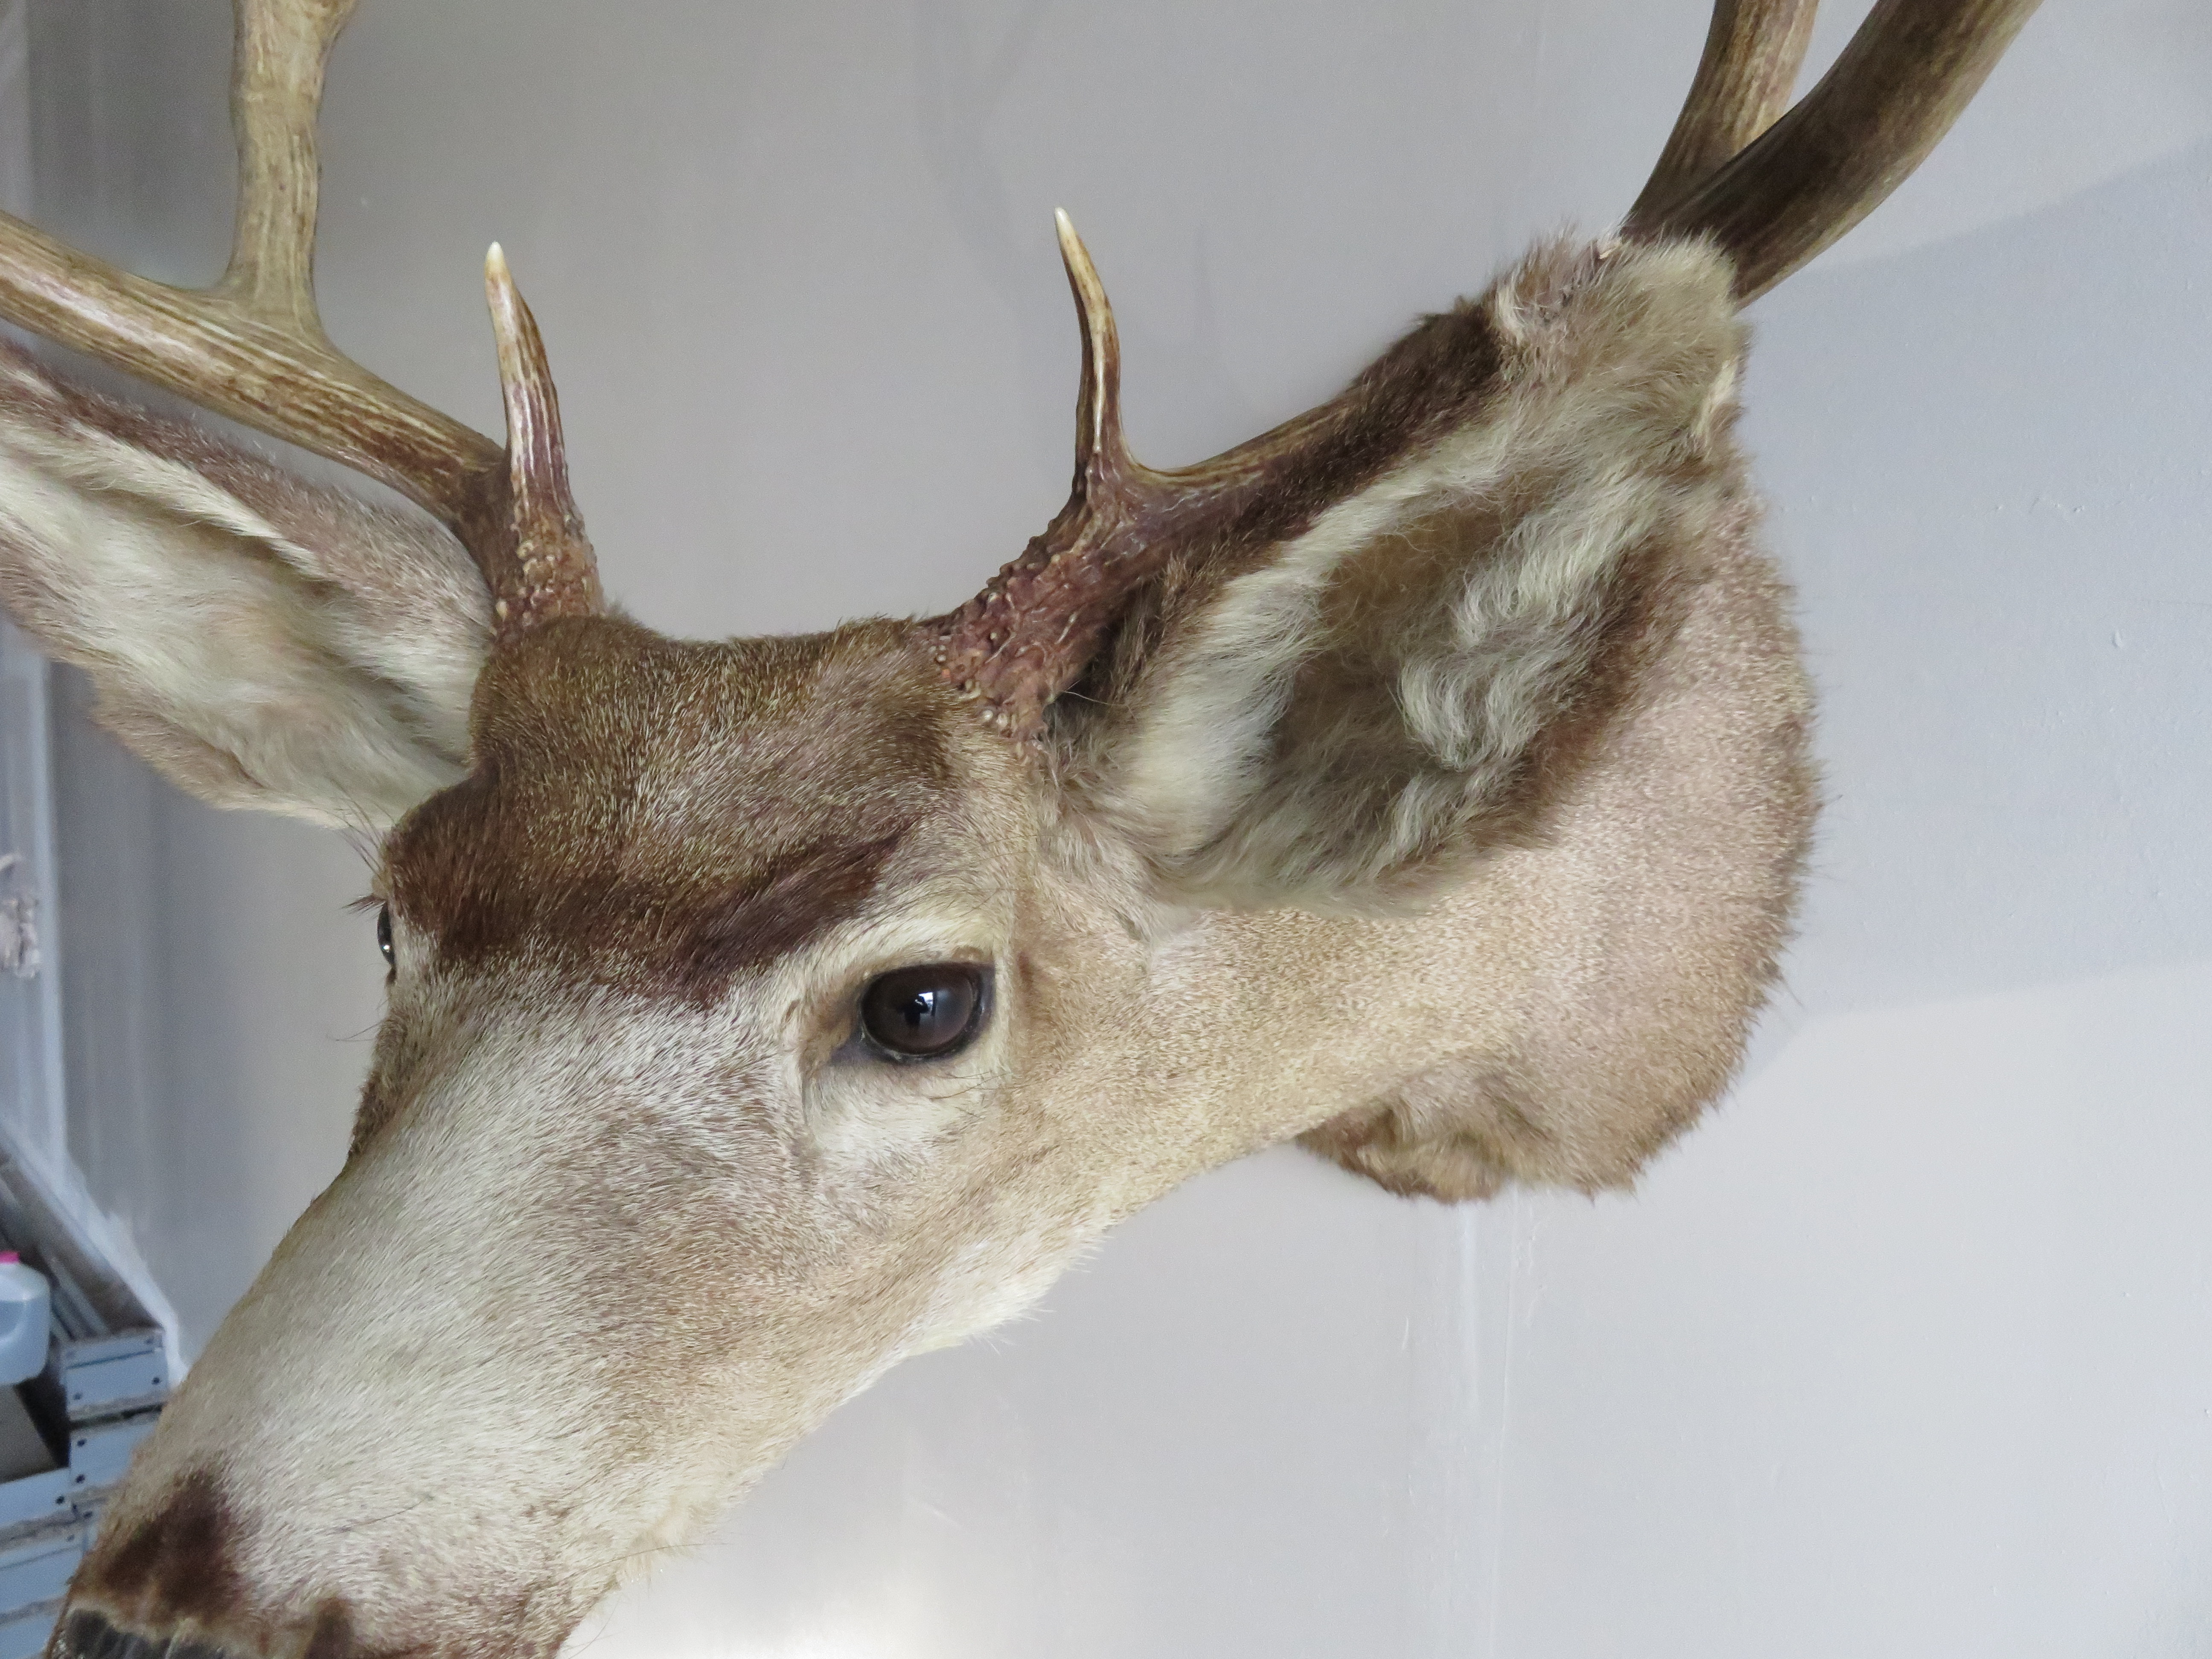 Mule Deer Taxidermy skin for sale. M-141H